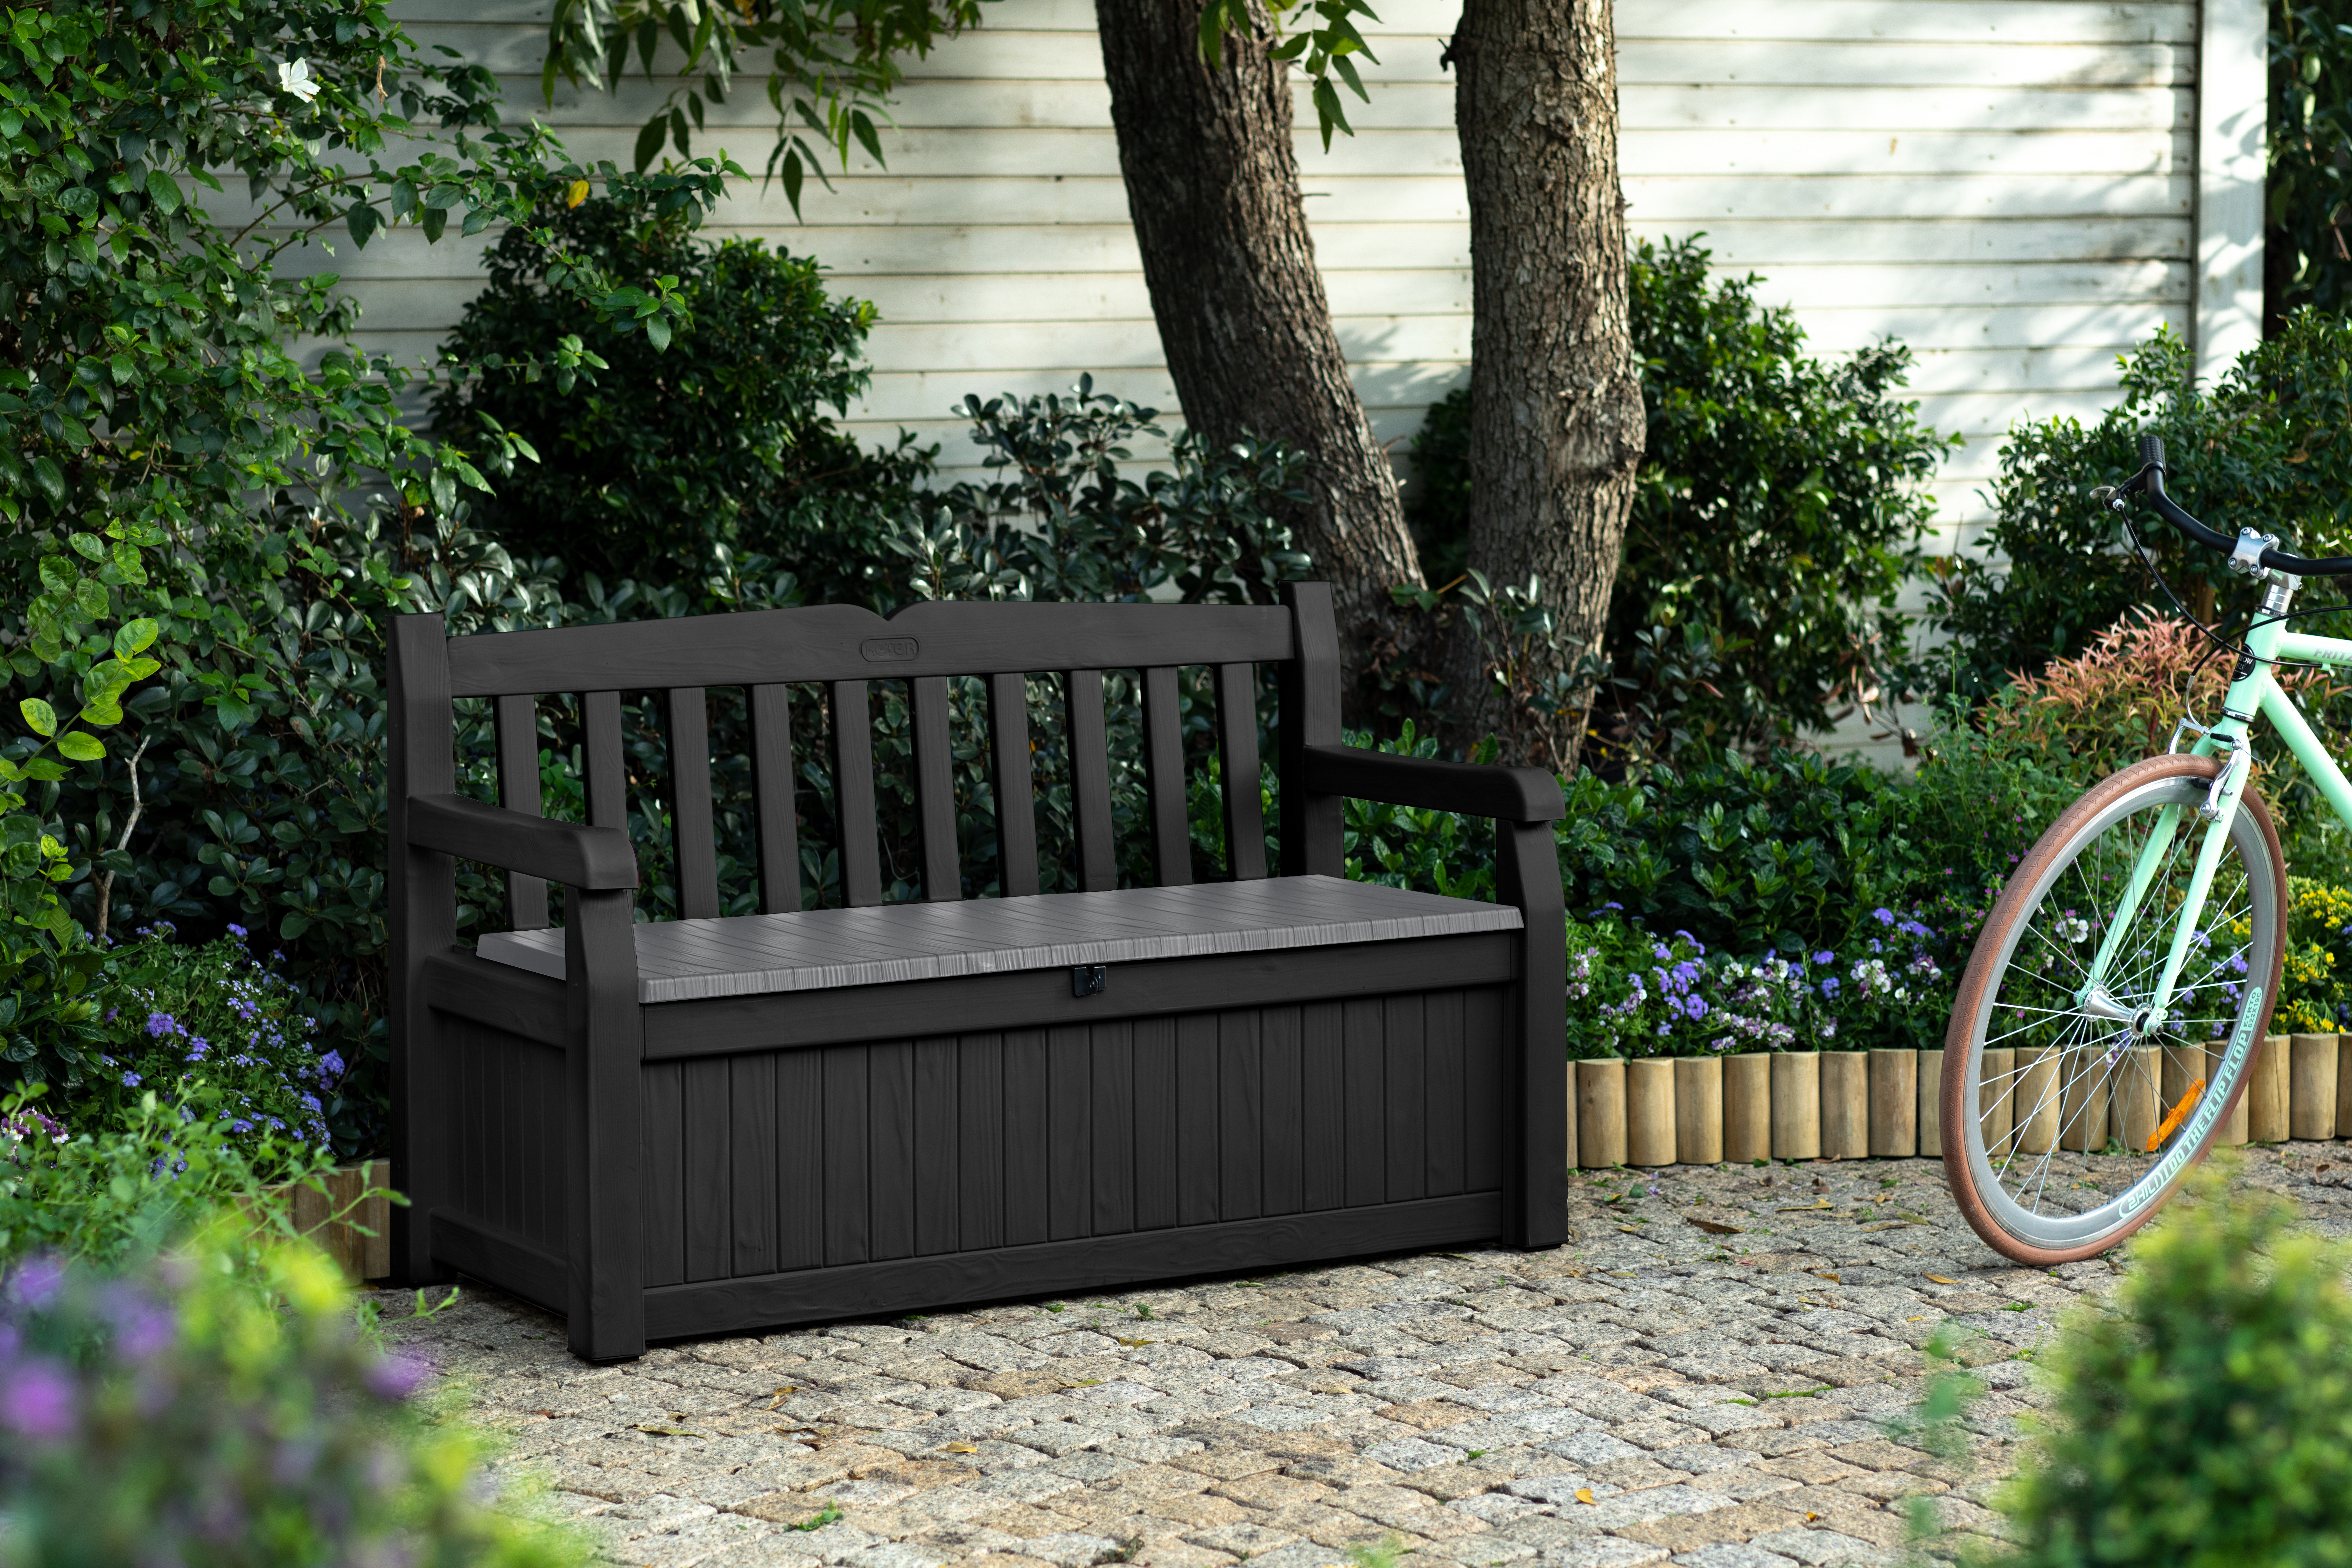 Keter Eden 265L Outdoor Garden Storage Bench - Graphite